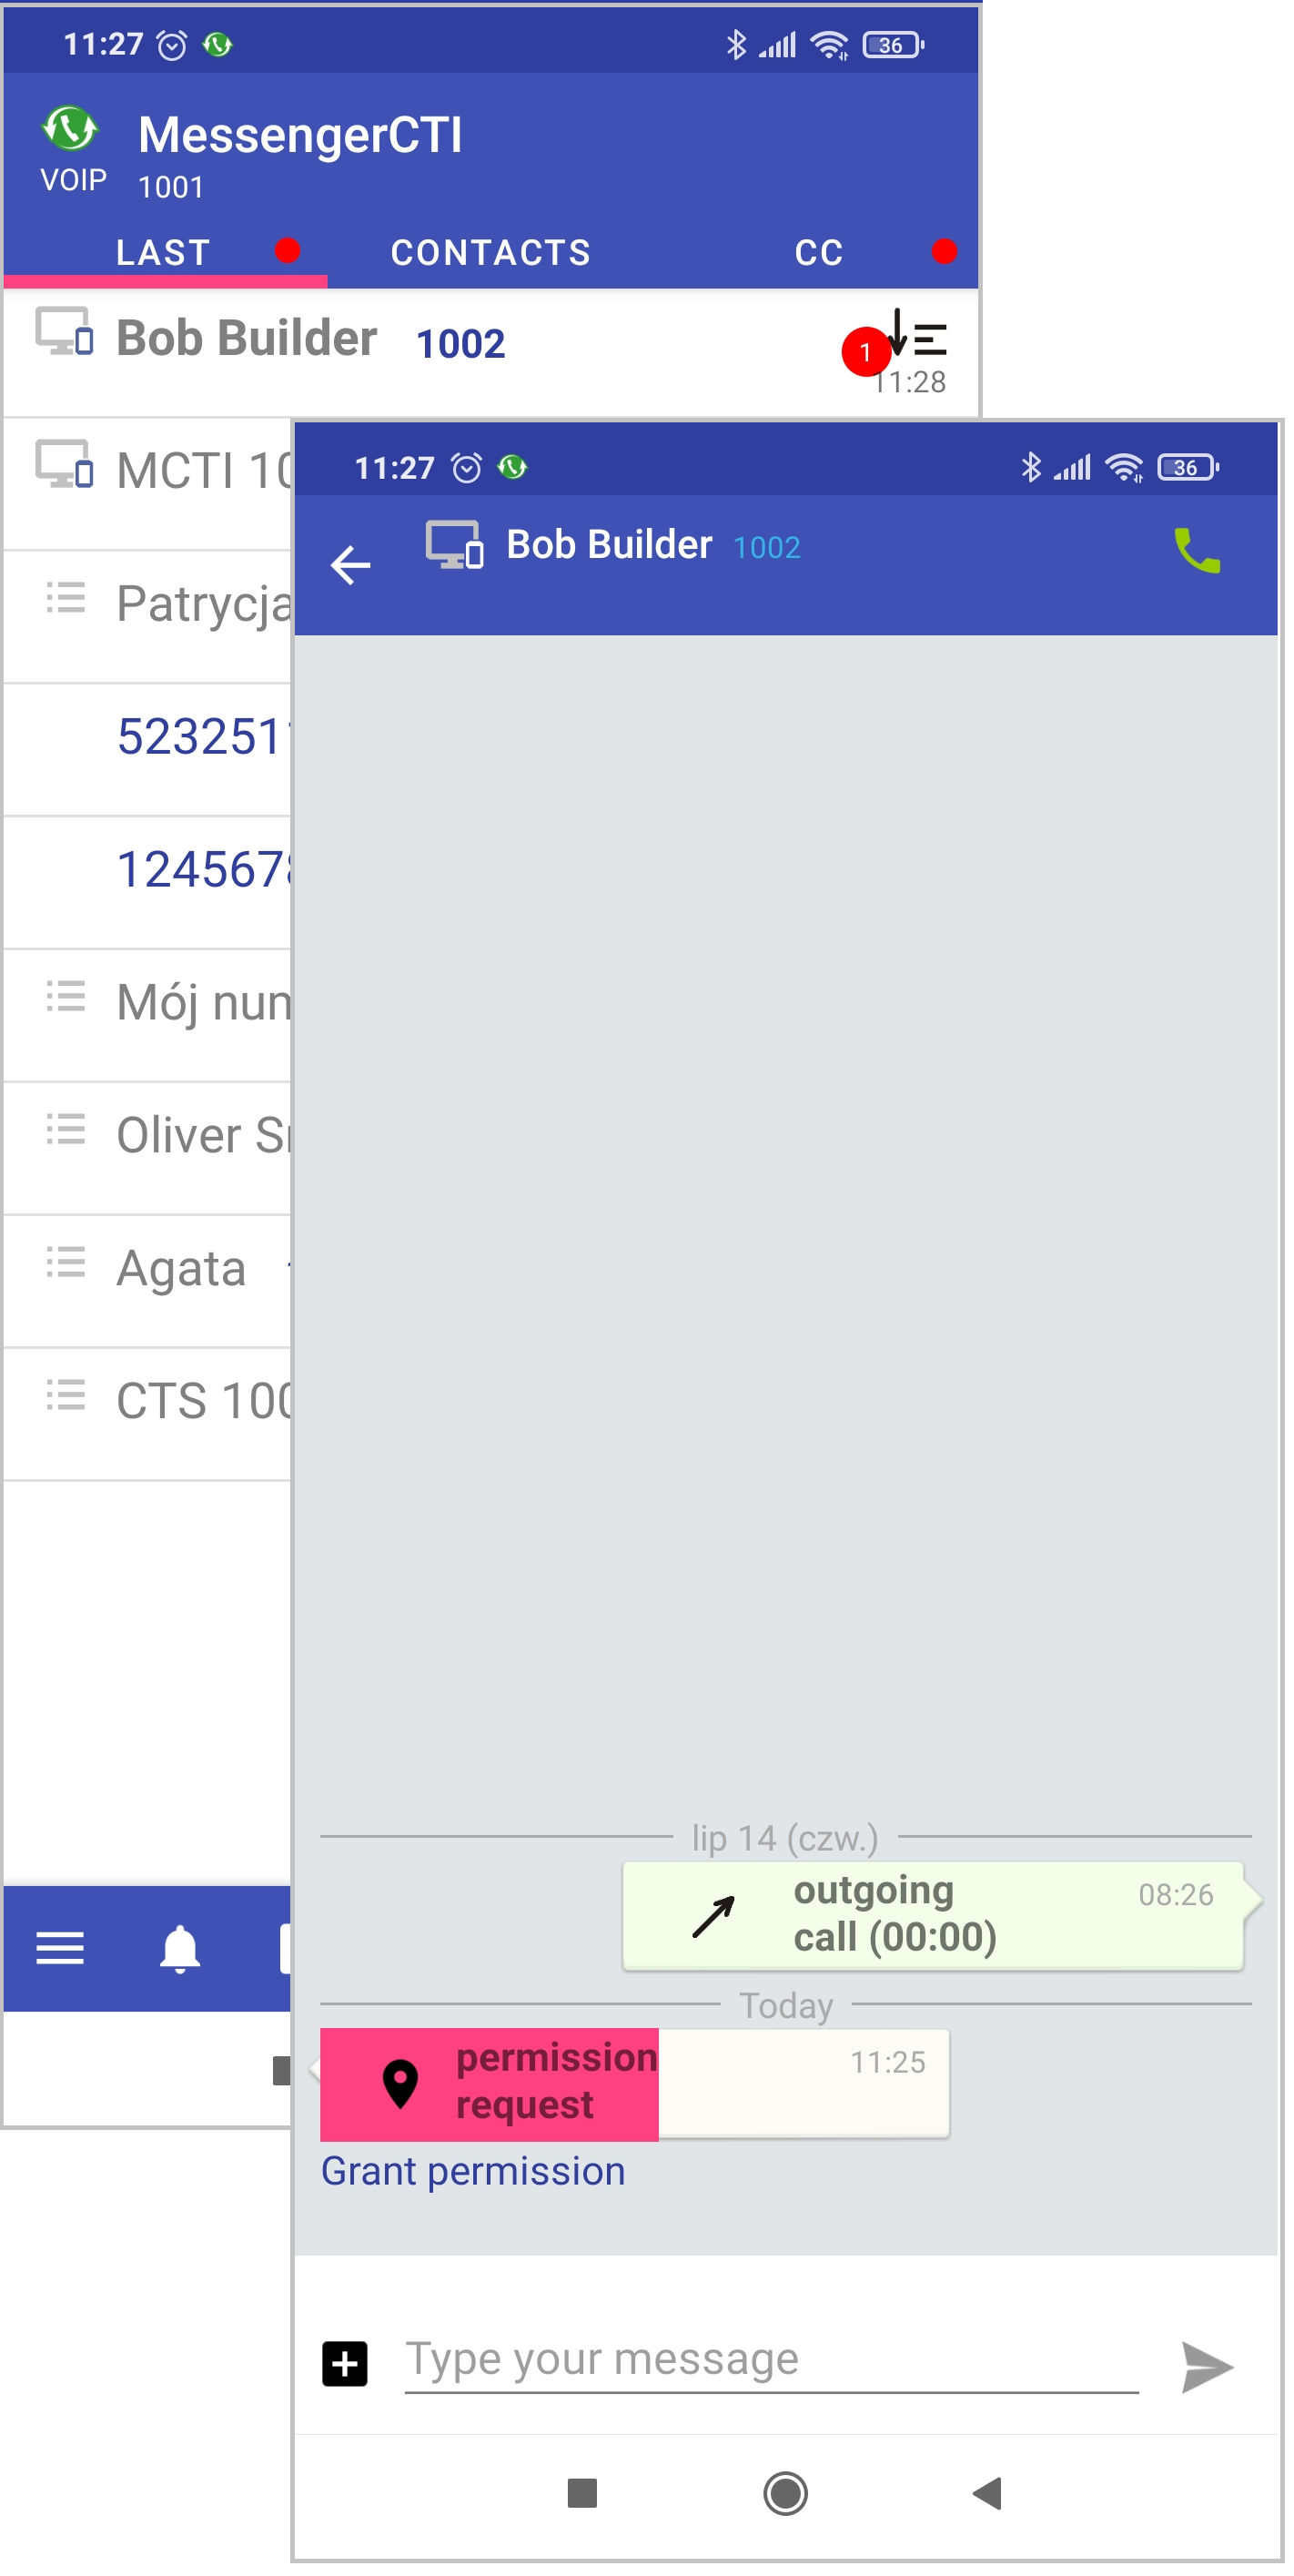 MessengerCTI.mobile 1.07 Location3 en.png